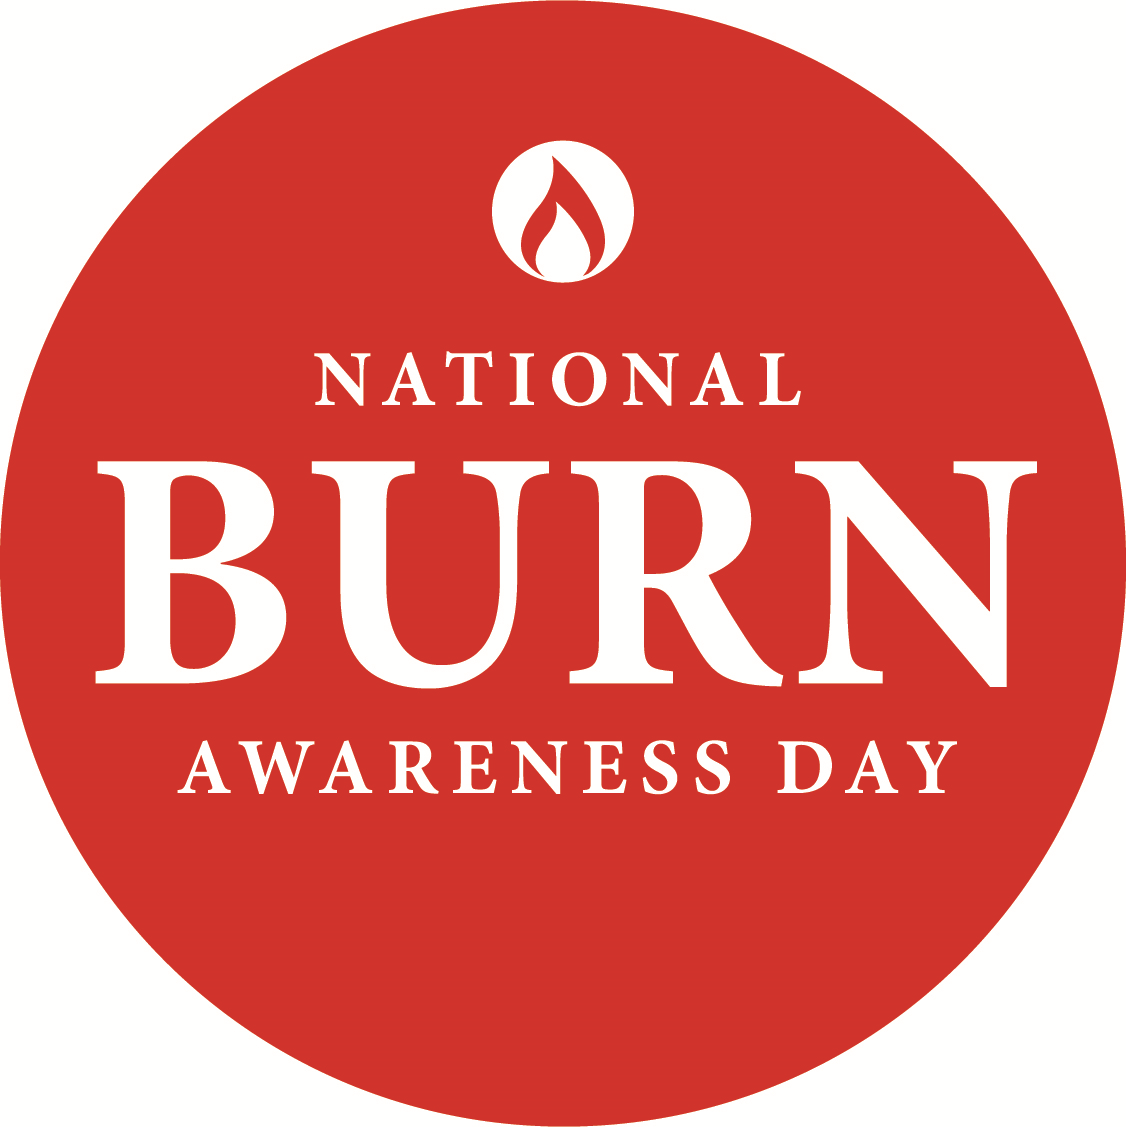 National Burns Awareness Day